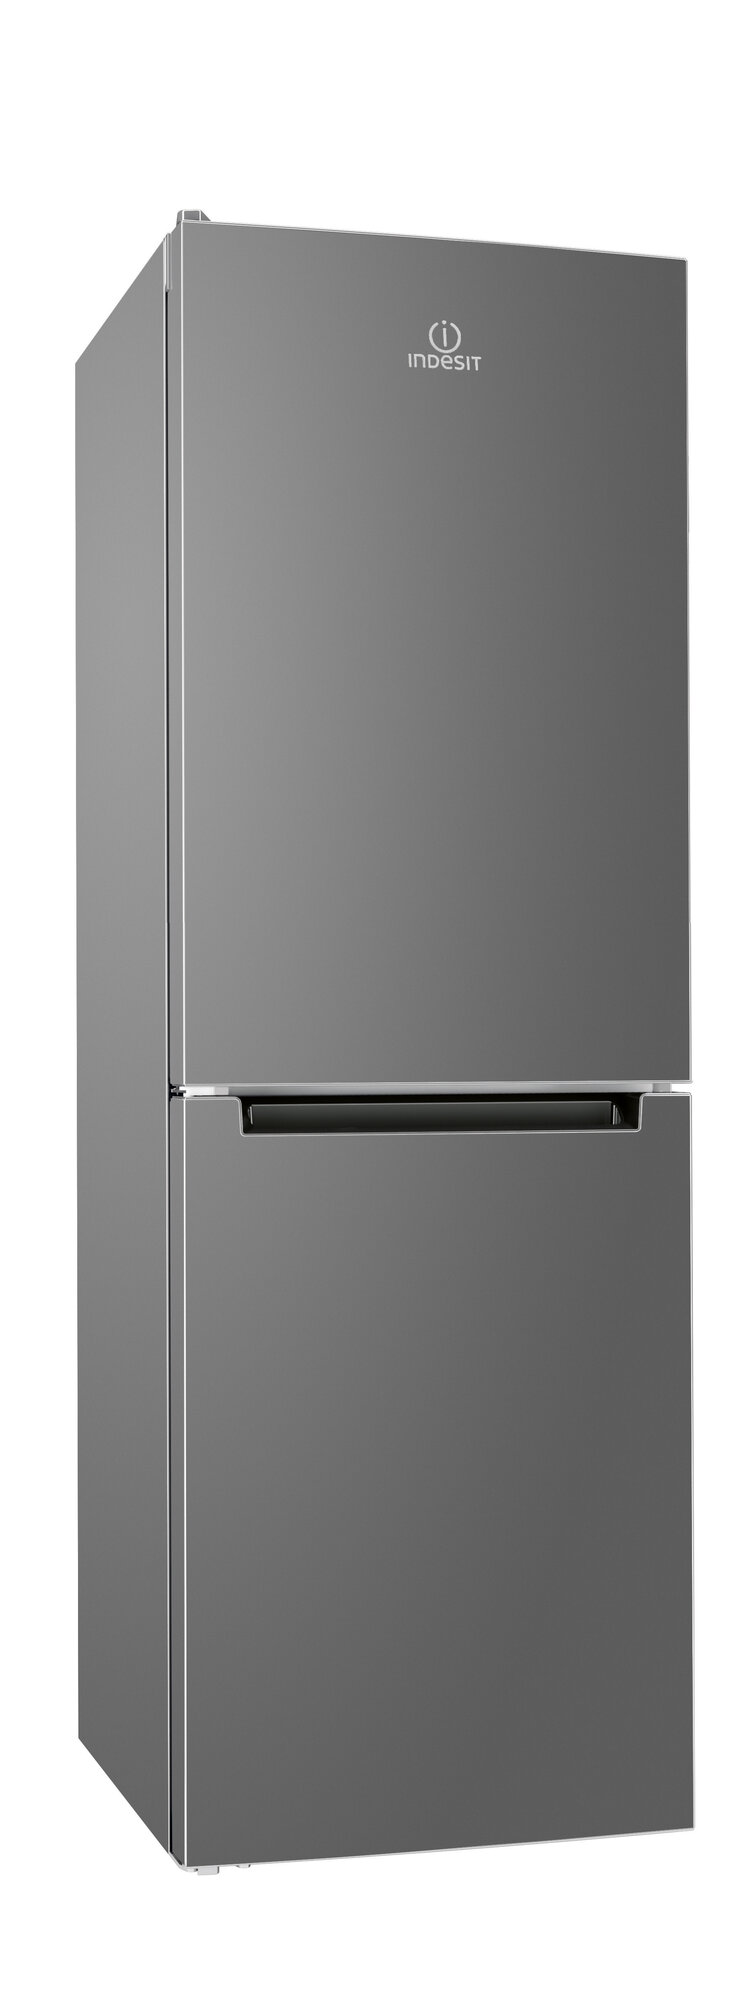 Двухкамерный холодильник Indesit DS 4160 G серебристый